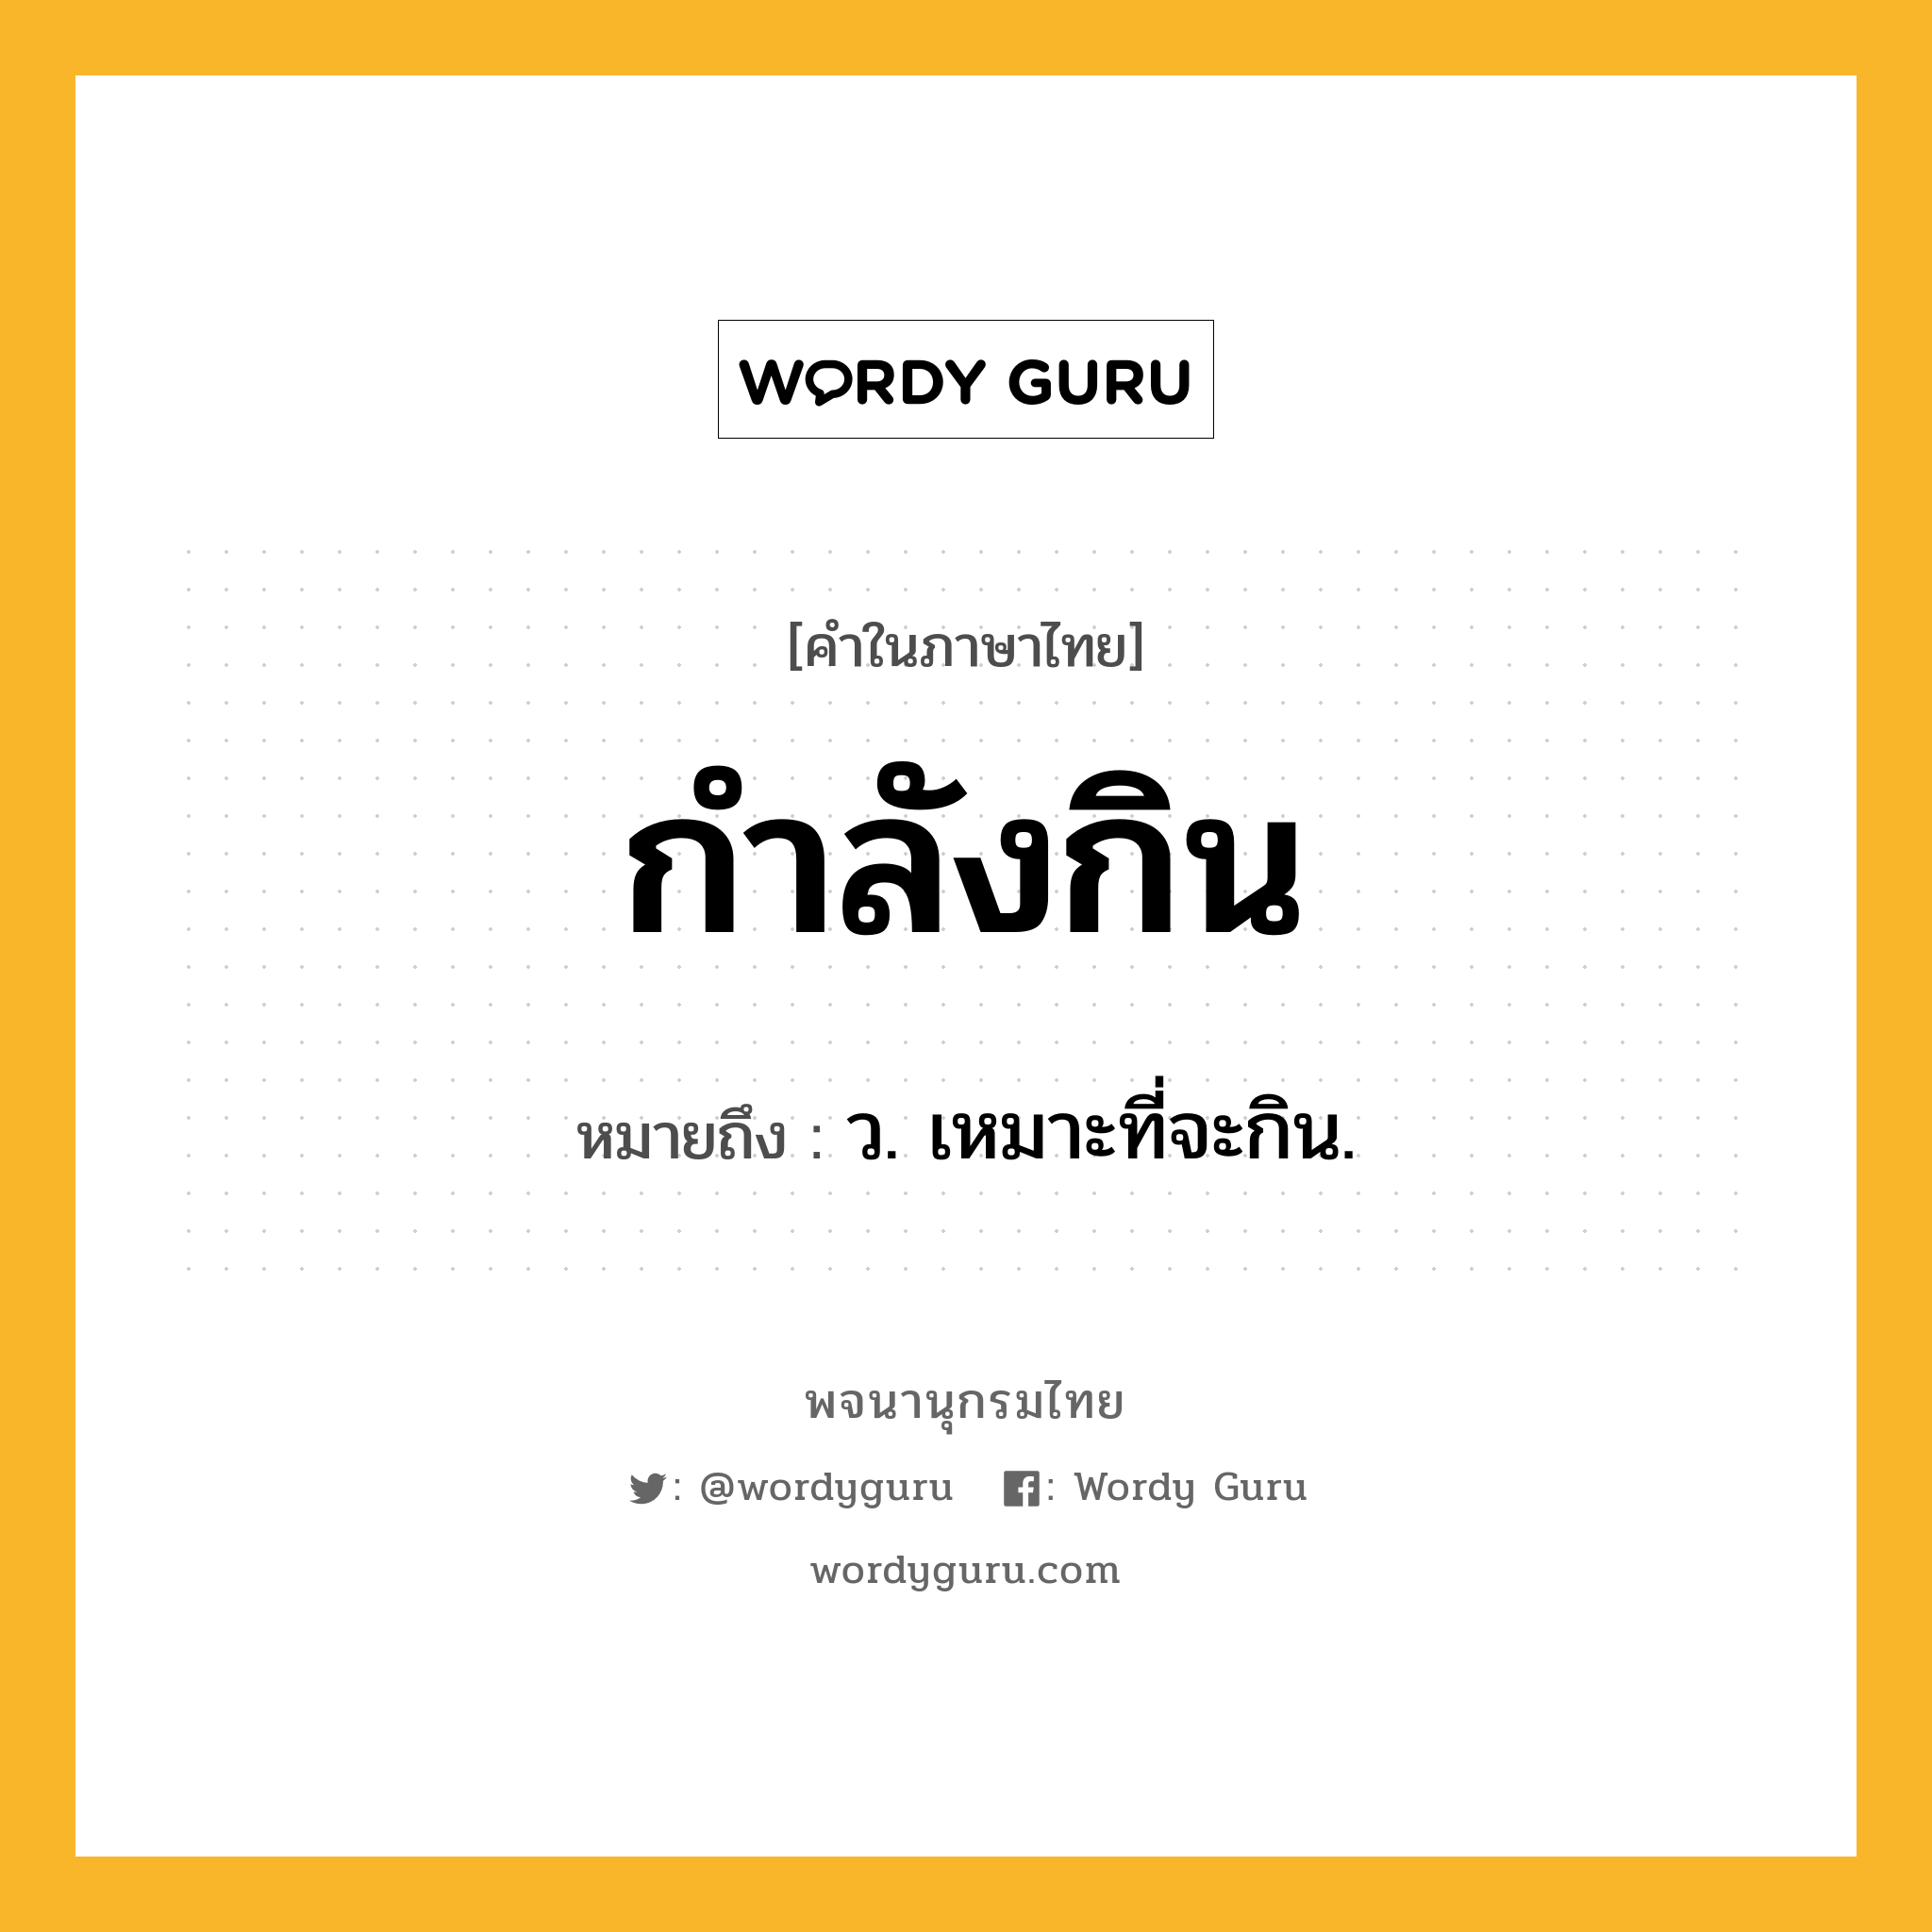 กำลังกิน ความหมาย หมายถึงอะไร?, คำในภาษาไทย กำลังกิน หมายถึง ว. เหมาะที่จะกิน.